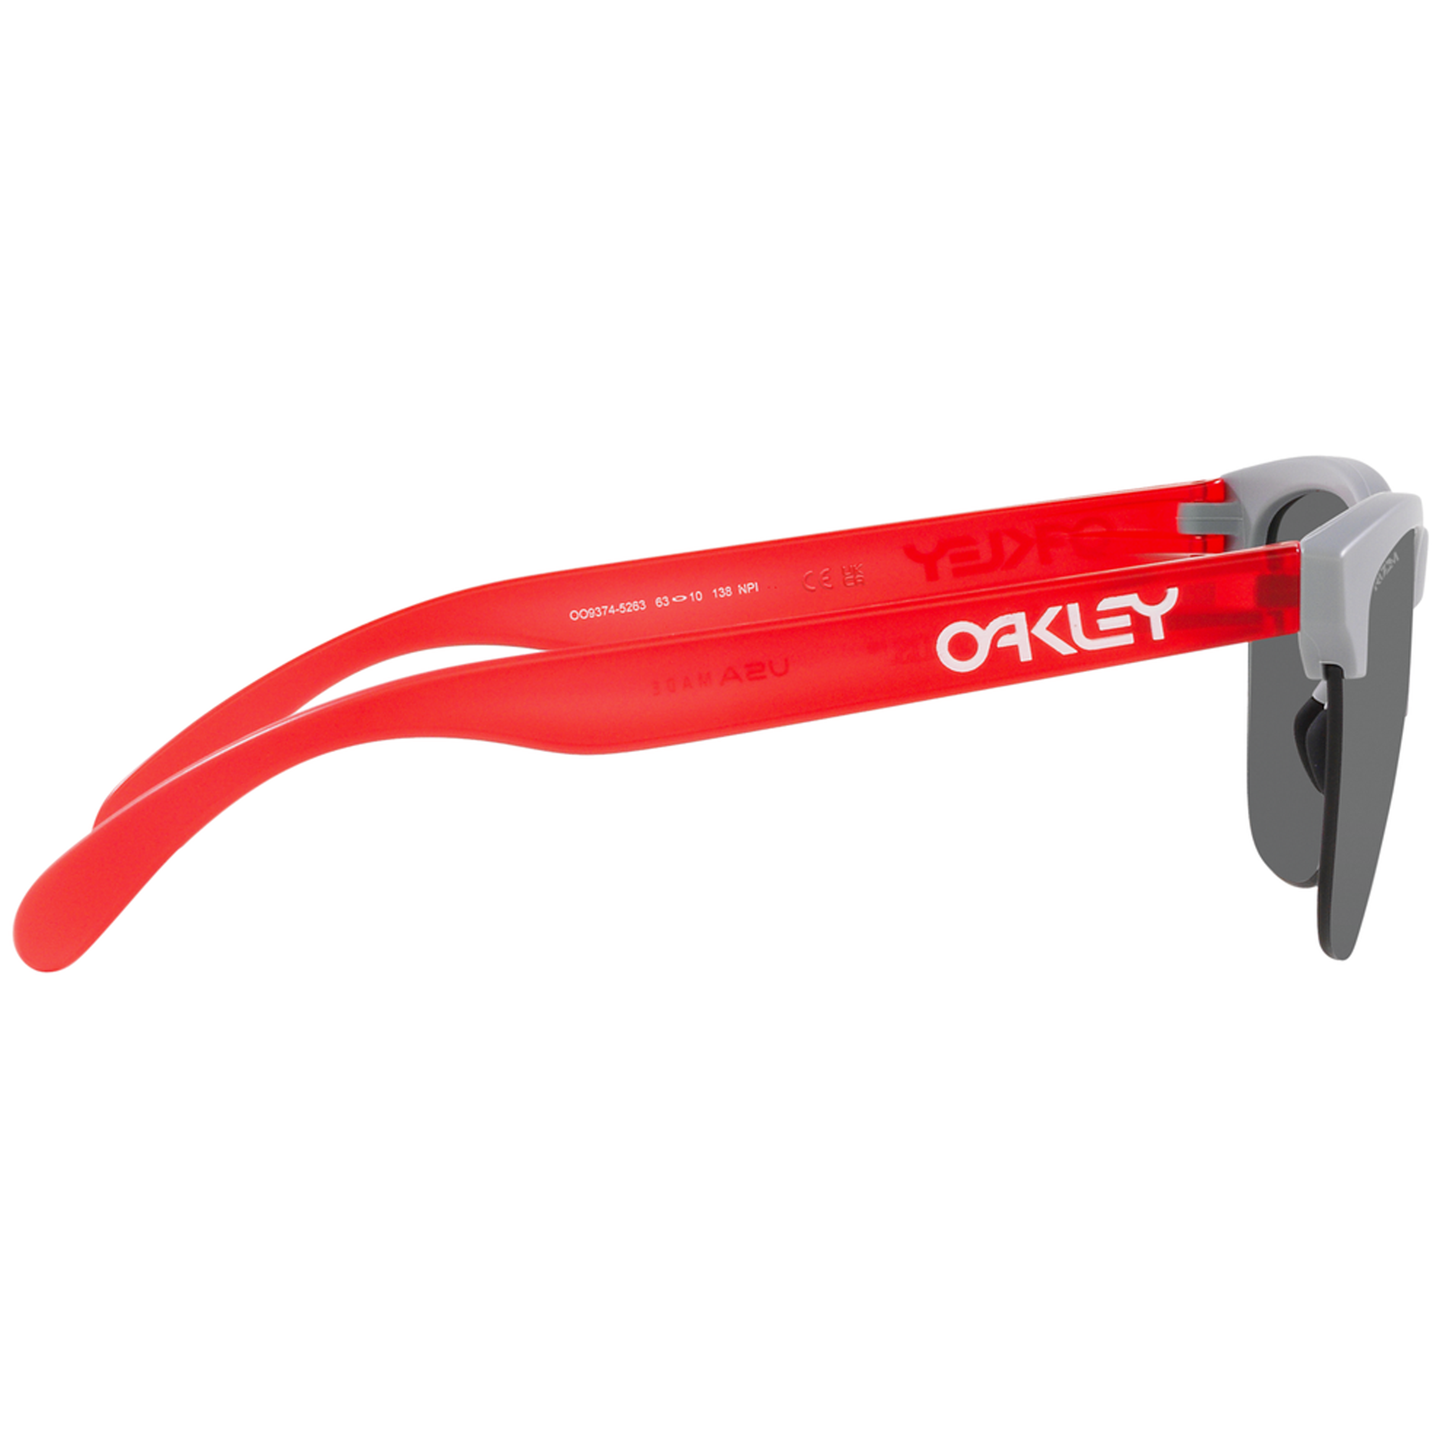 Oakley Frogskins Lite Sunglasses (Matt Fog Red) Prizm Black Lens - Free Case